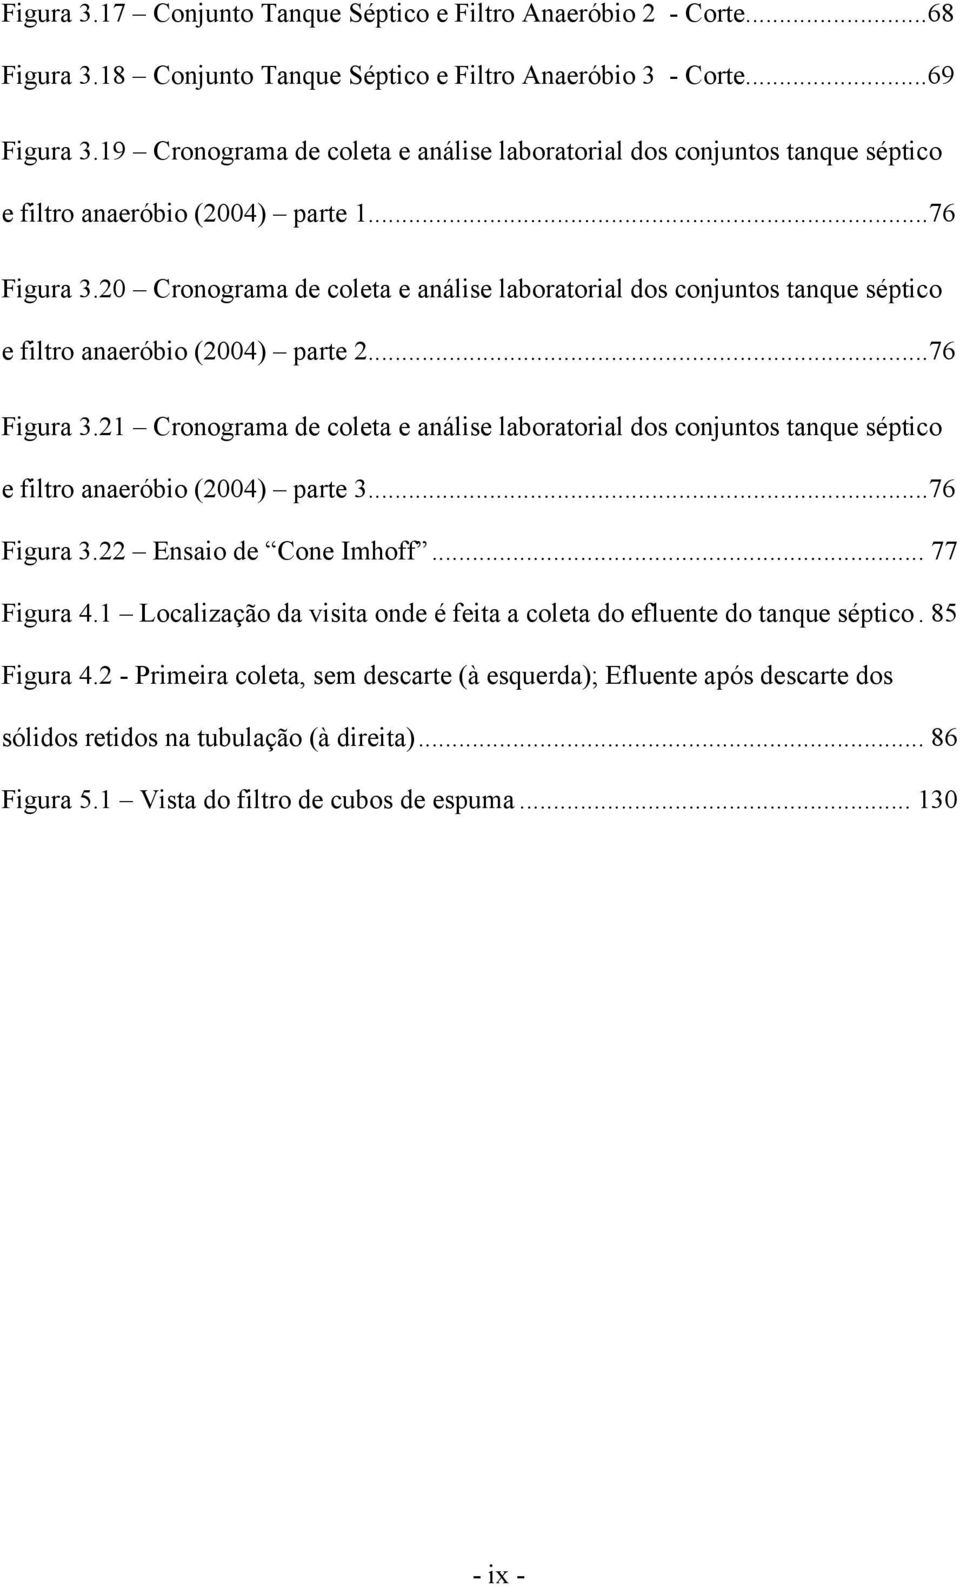 20 Cronograma de coleta e análise laboratorial dos conjuntos tanque séptico e filtro anaeróbio (2004) parte 2...76 Figura 3.